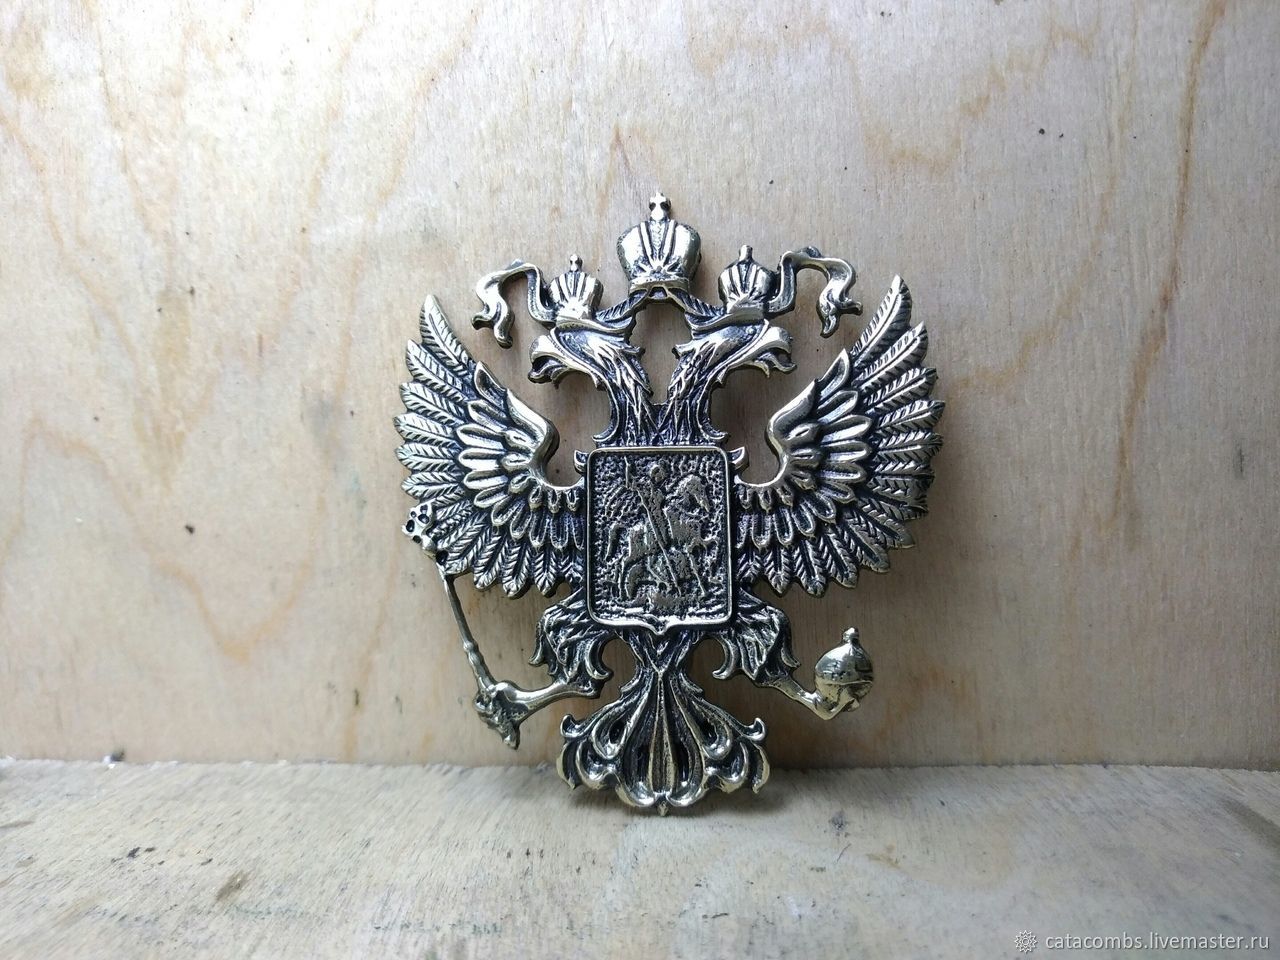 Нашлепка "герб России"